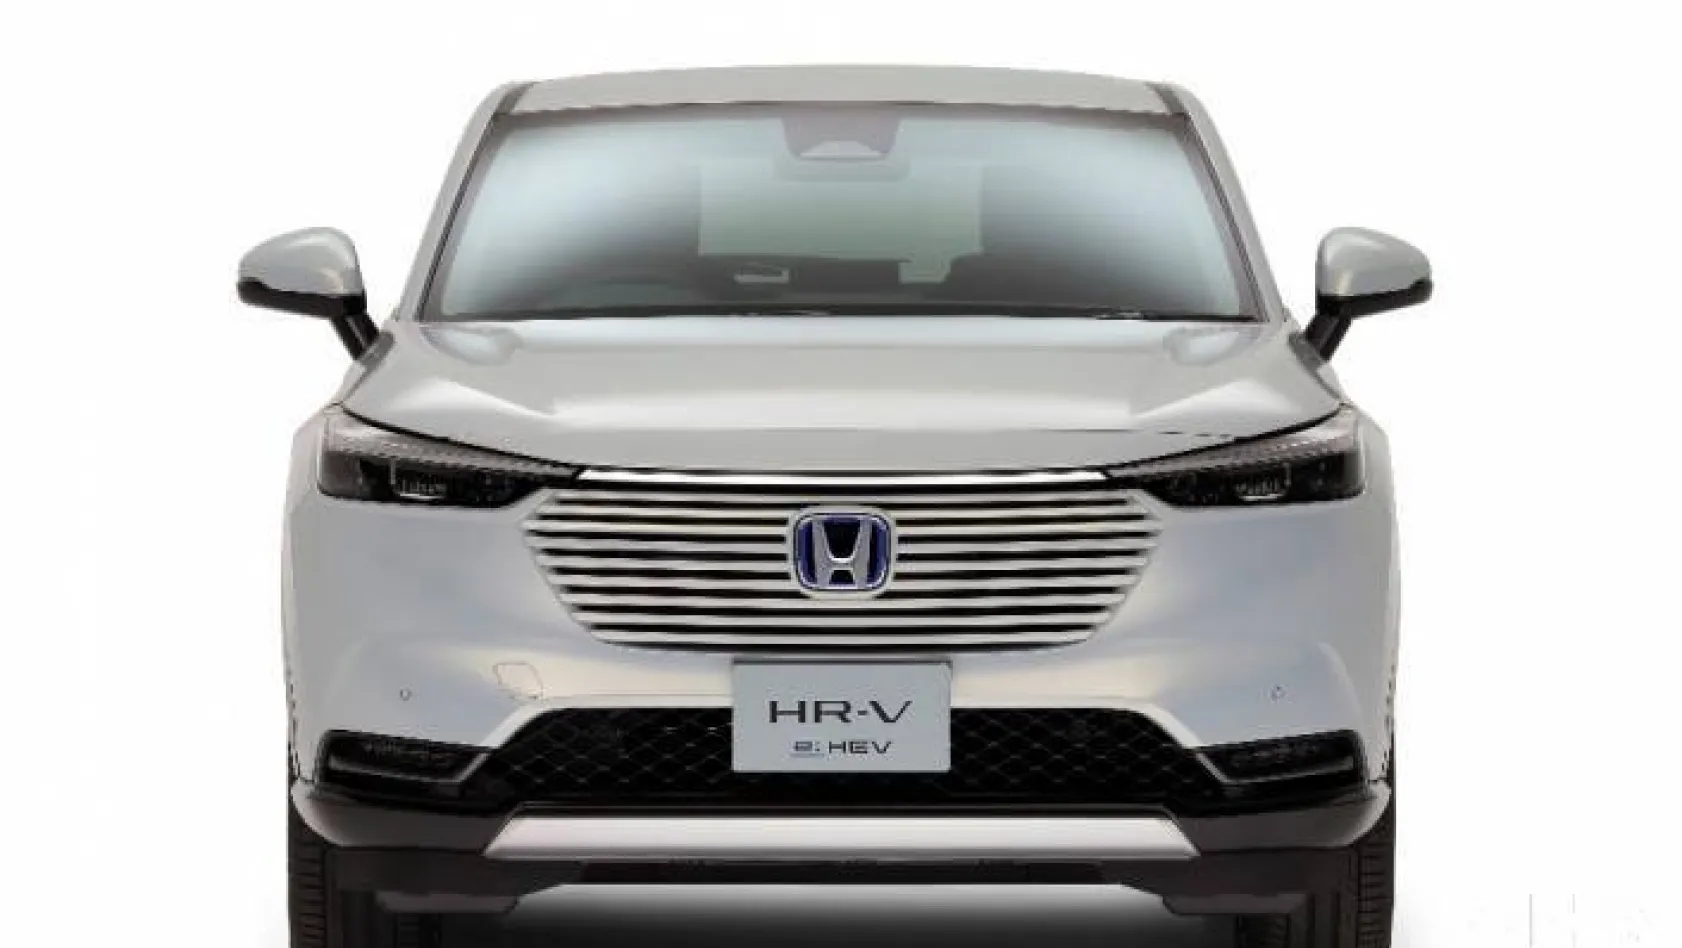 Honda'nın yeni HR-V modeli tanıtıldı